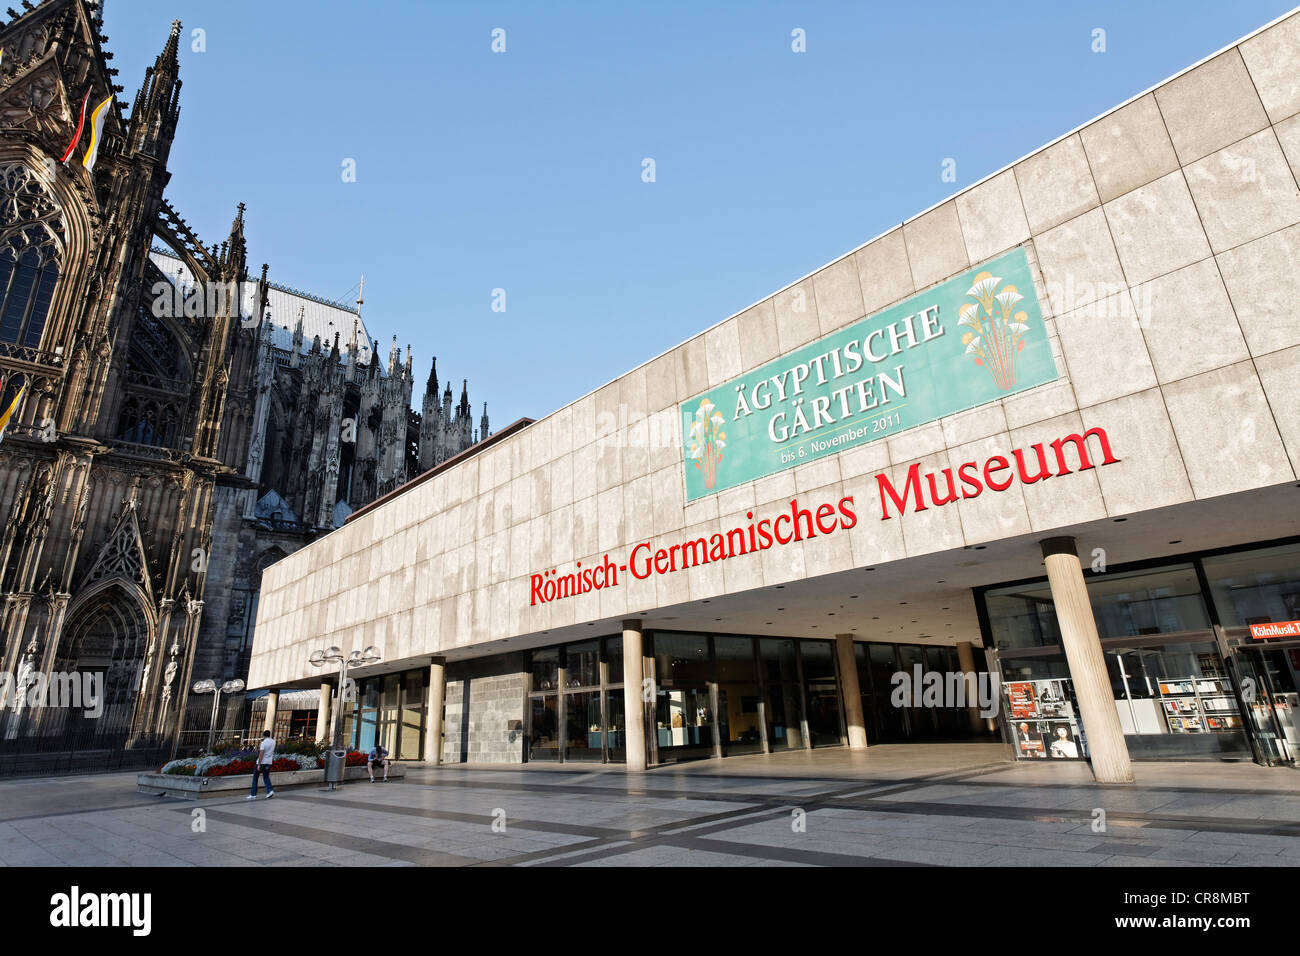 Roemisch Germanisches Museum oder römisch-germanischen Museums, Roncalli-Platz square, Köln, Nordrhein-Westfalen, Deutschland, Europa Stockfoto